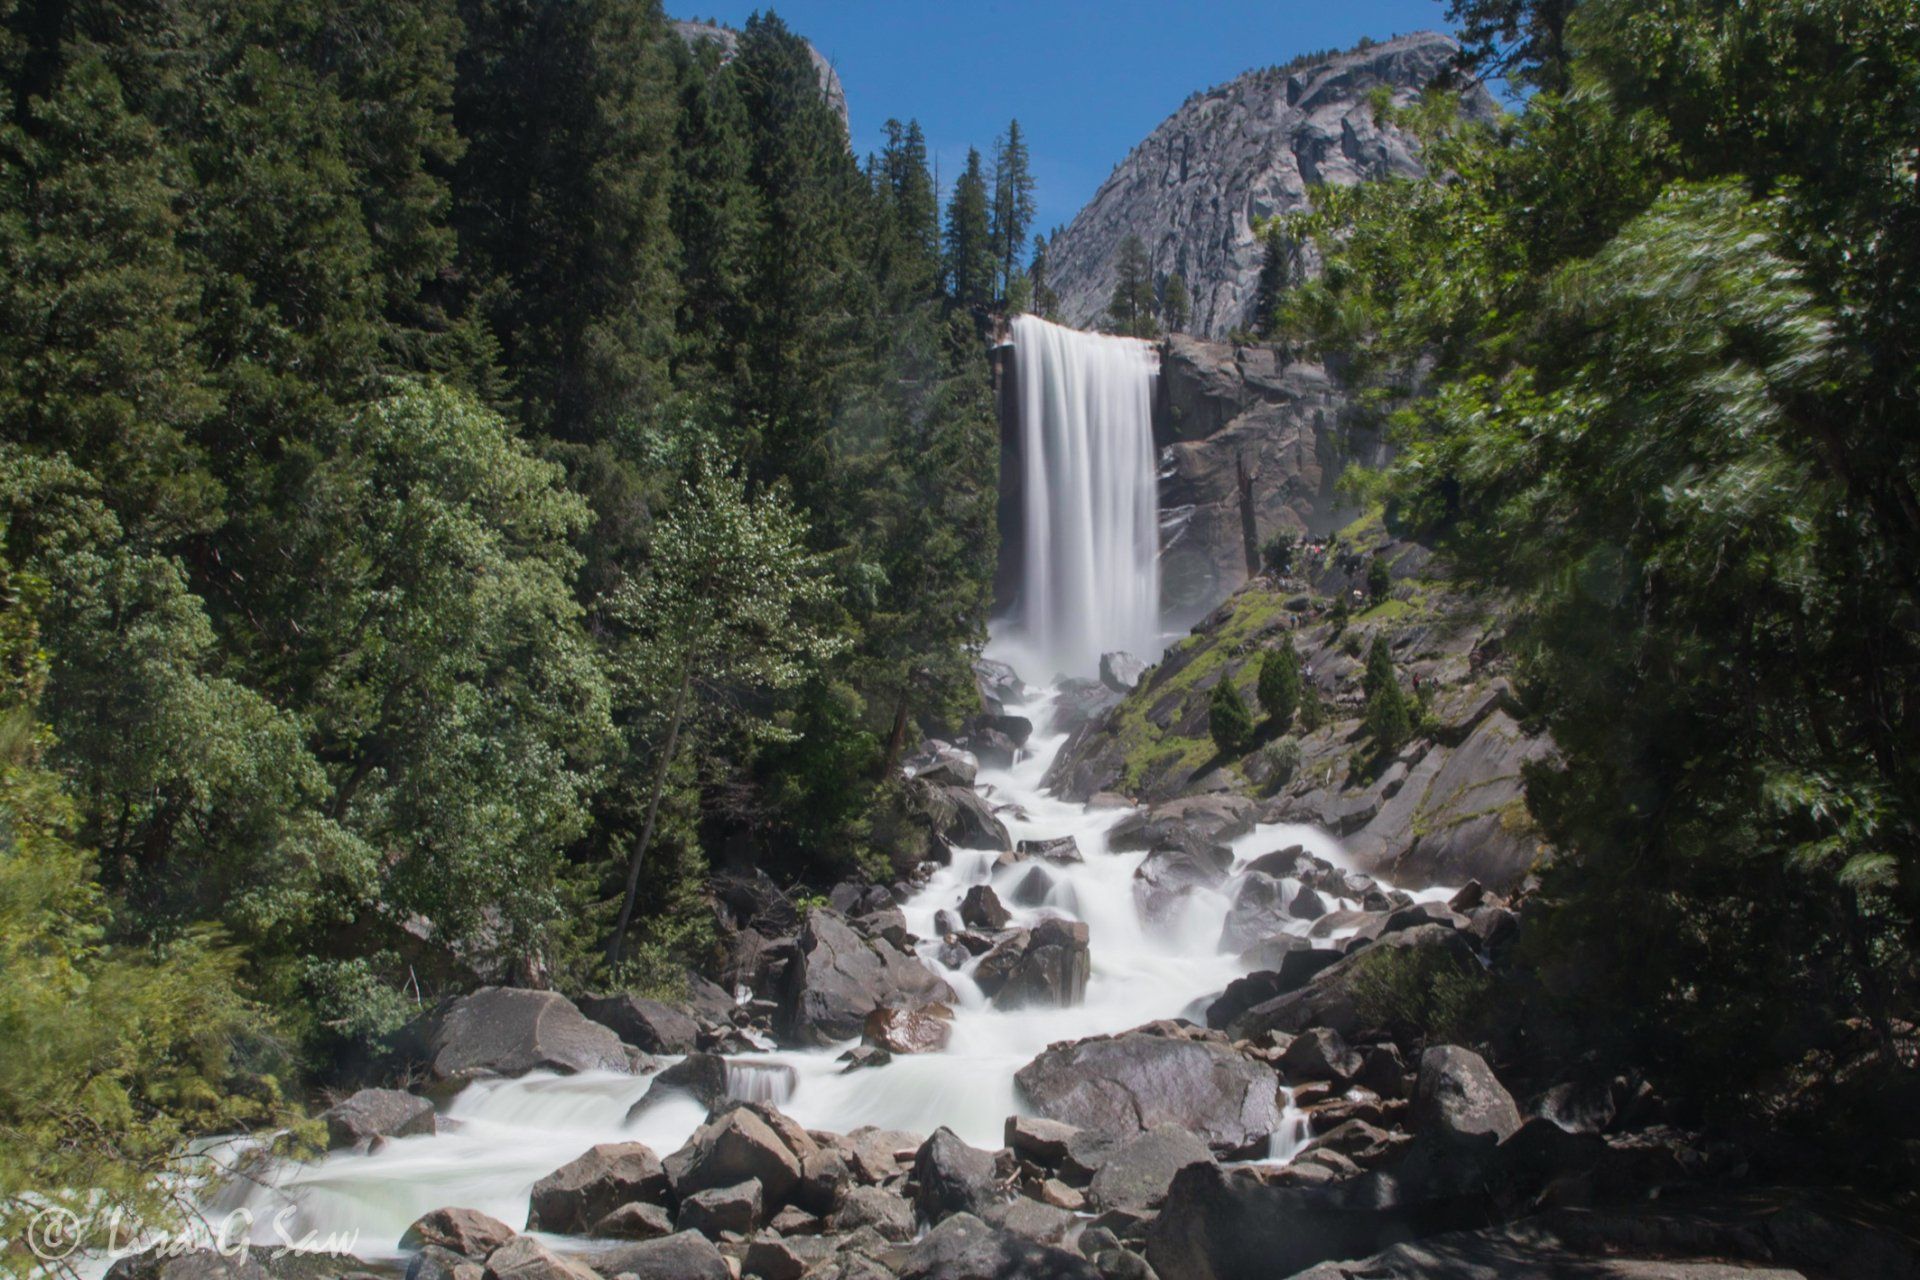 Vernal Fall at Yosemite National Park